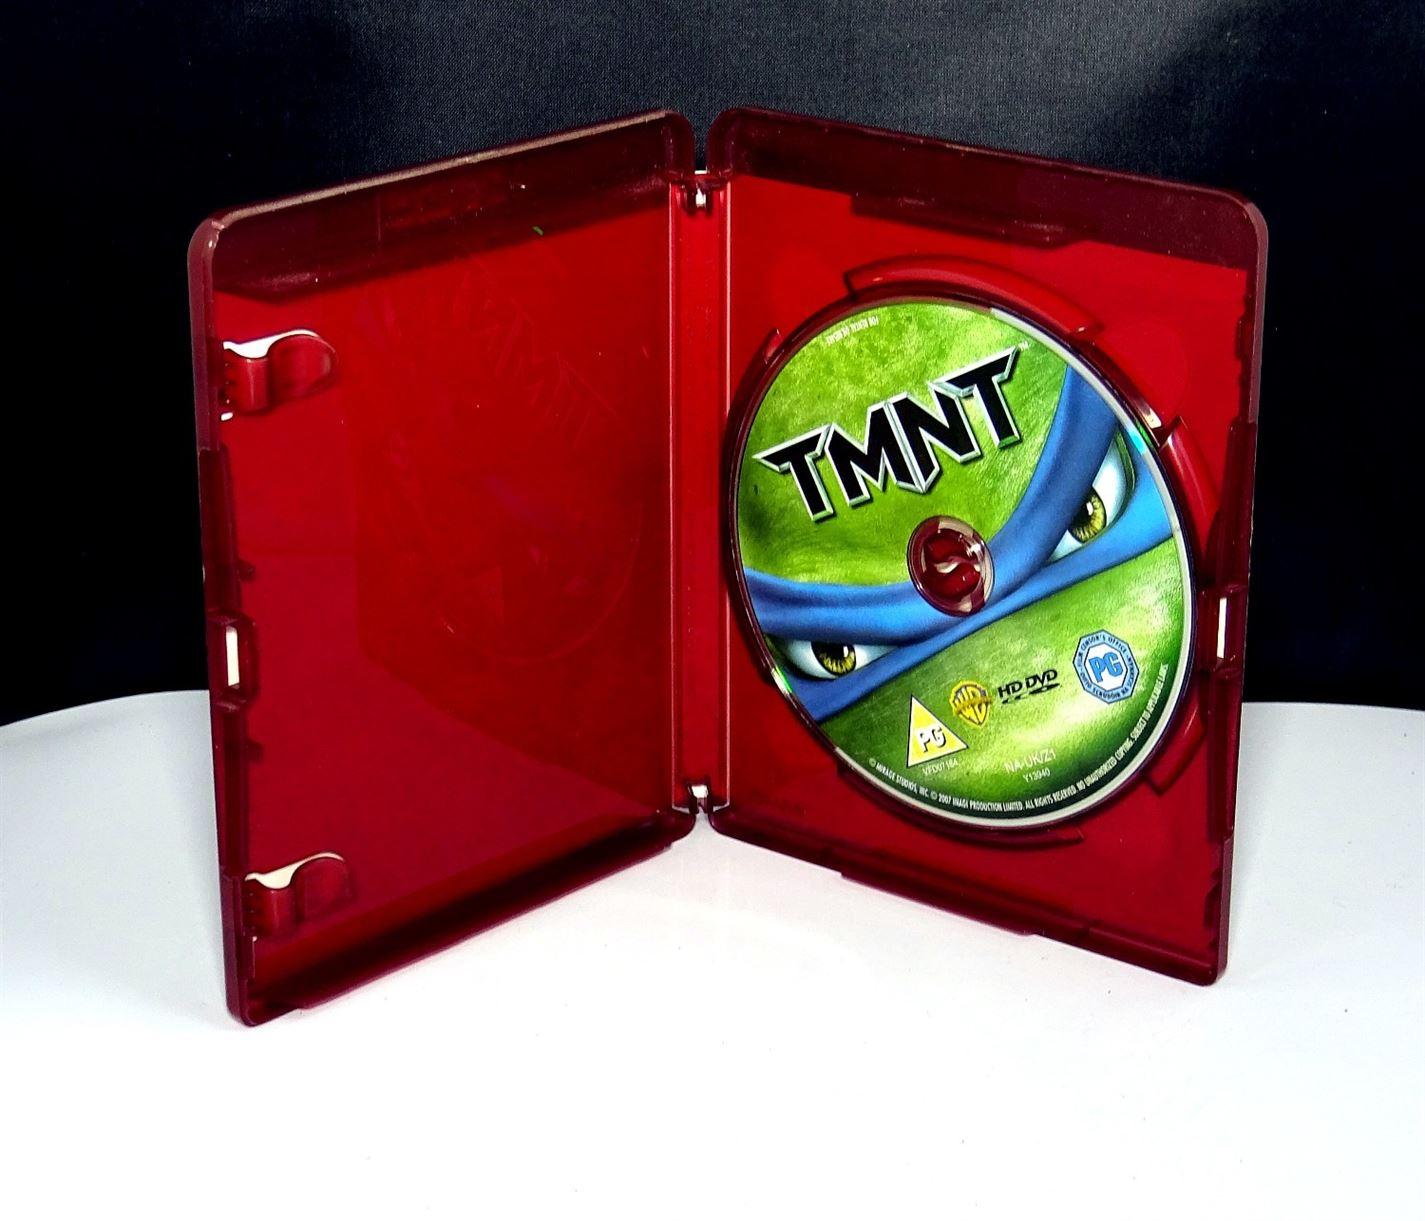 Teenage Mutant Ninja Turtles (HD DVD) - UK Seller